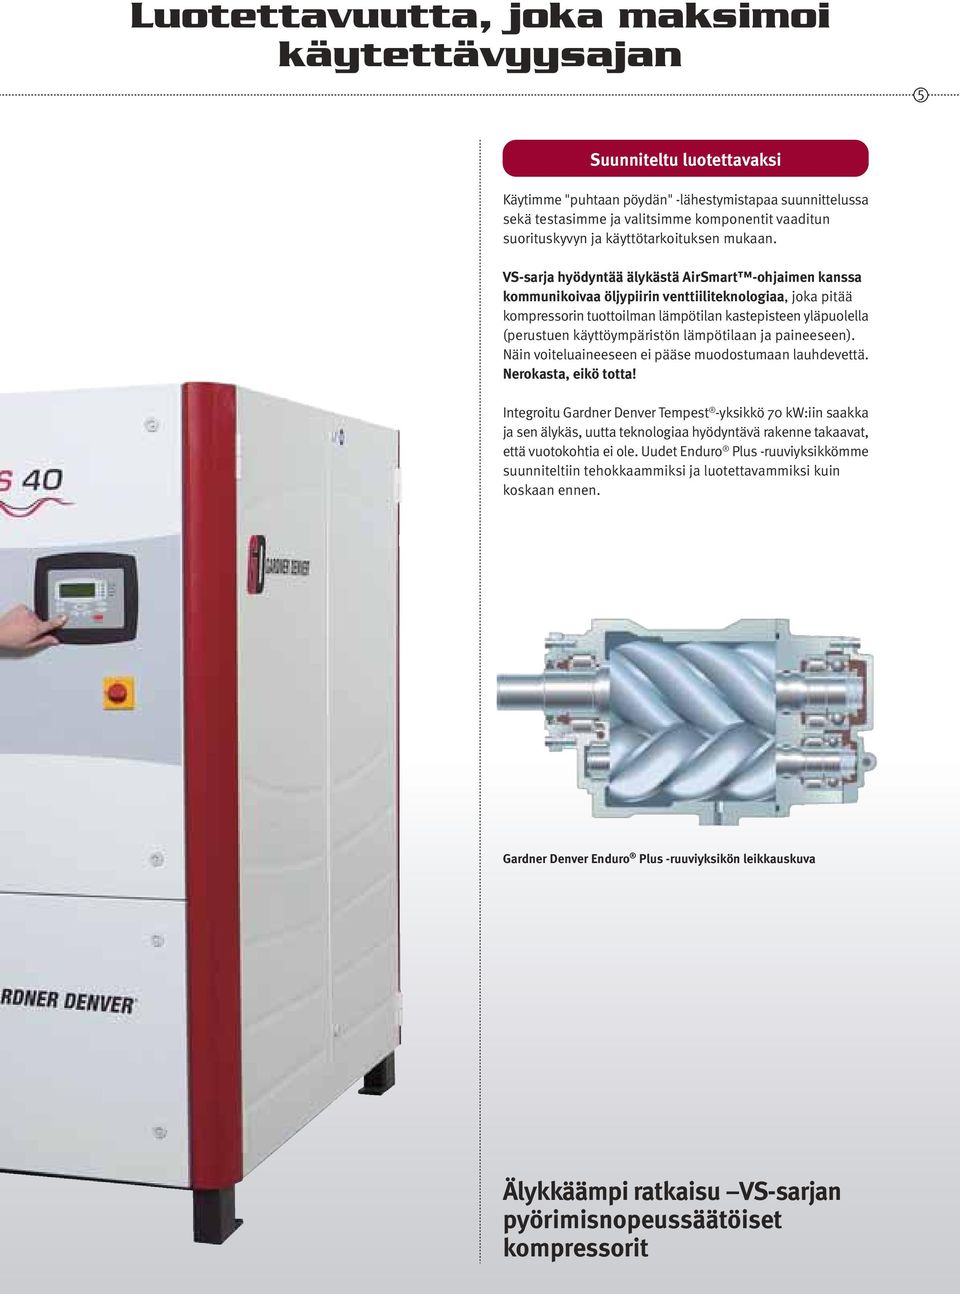 VS-sarja hyödyntää älykästä AirSmart -ohjaimen kanssa kommunikoivaa öljypiirin venttiiliteknologiaa, joka pitää kompressorin tuottoilman lämpötilan kastepisteen yläpuolella (perustuen